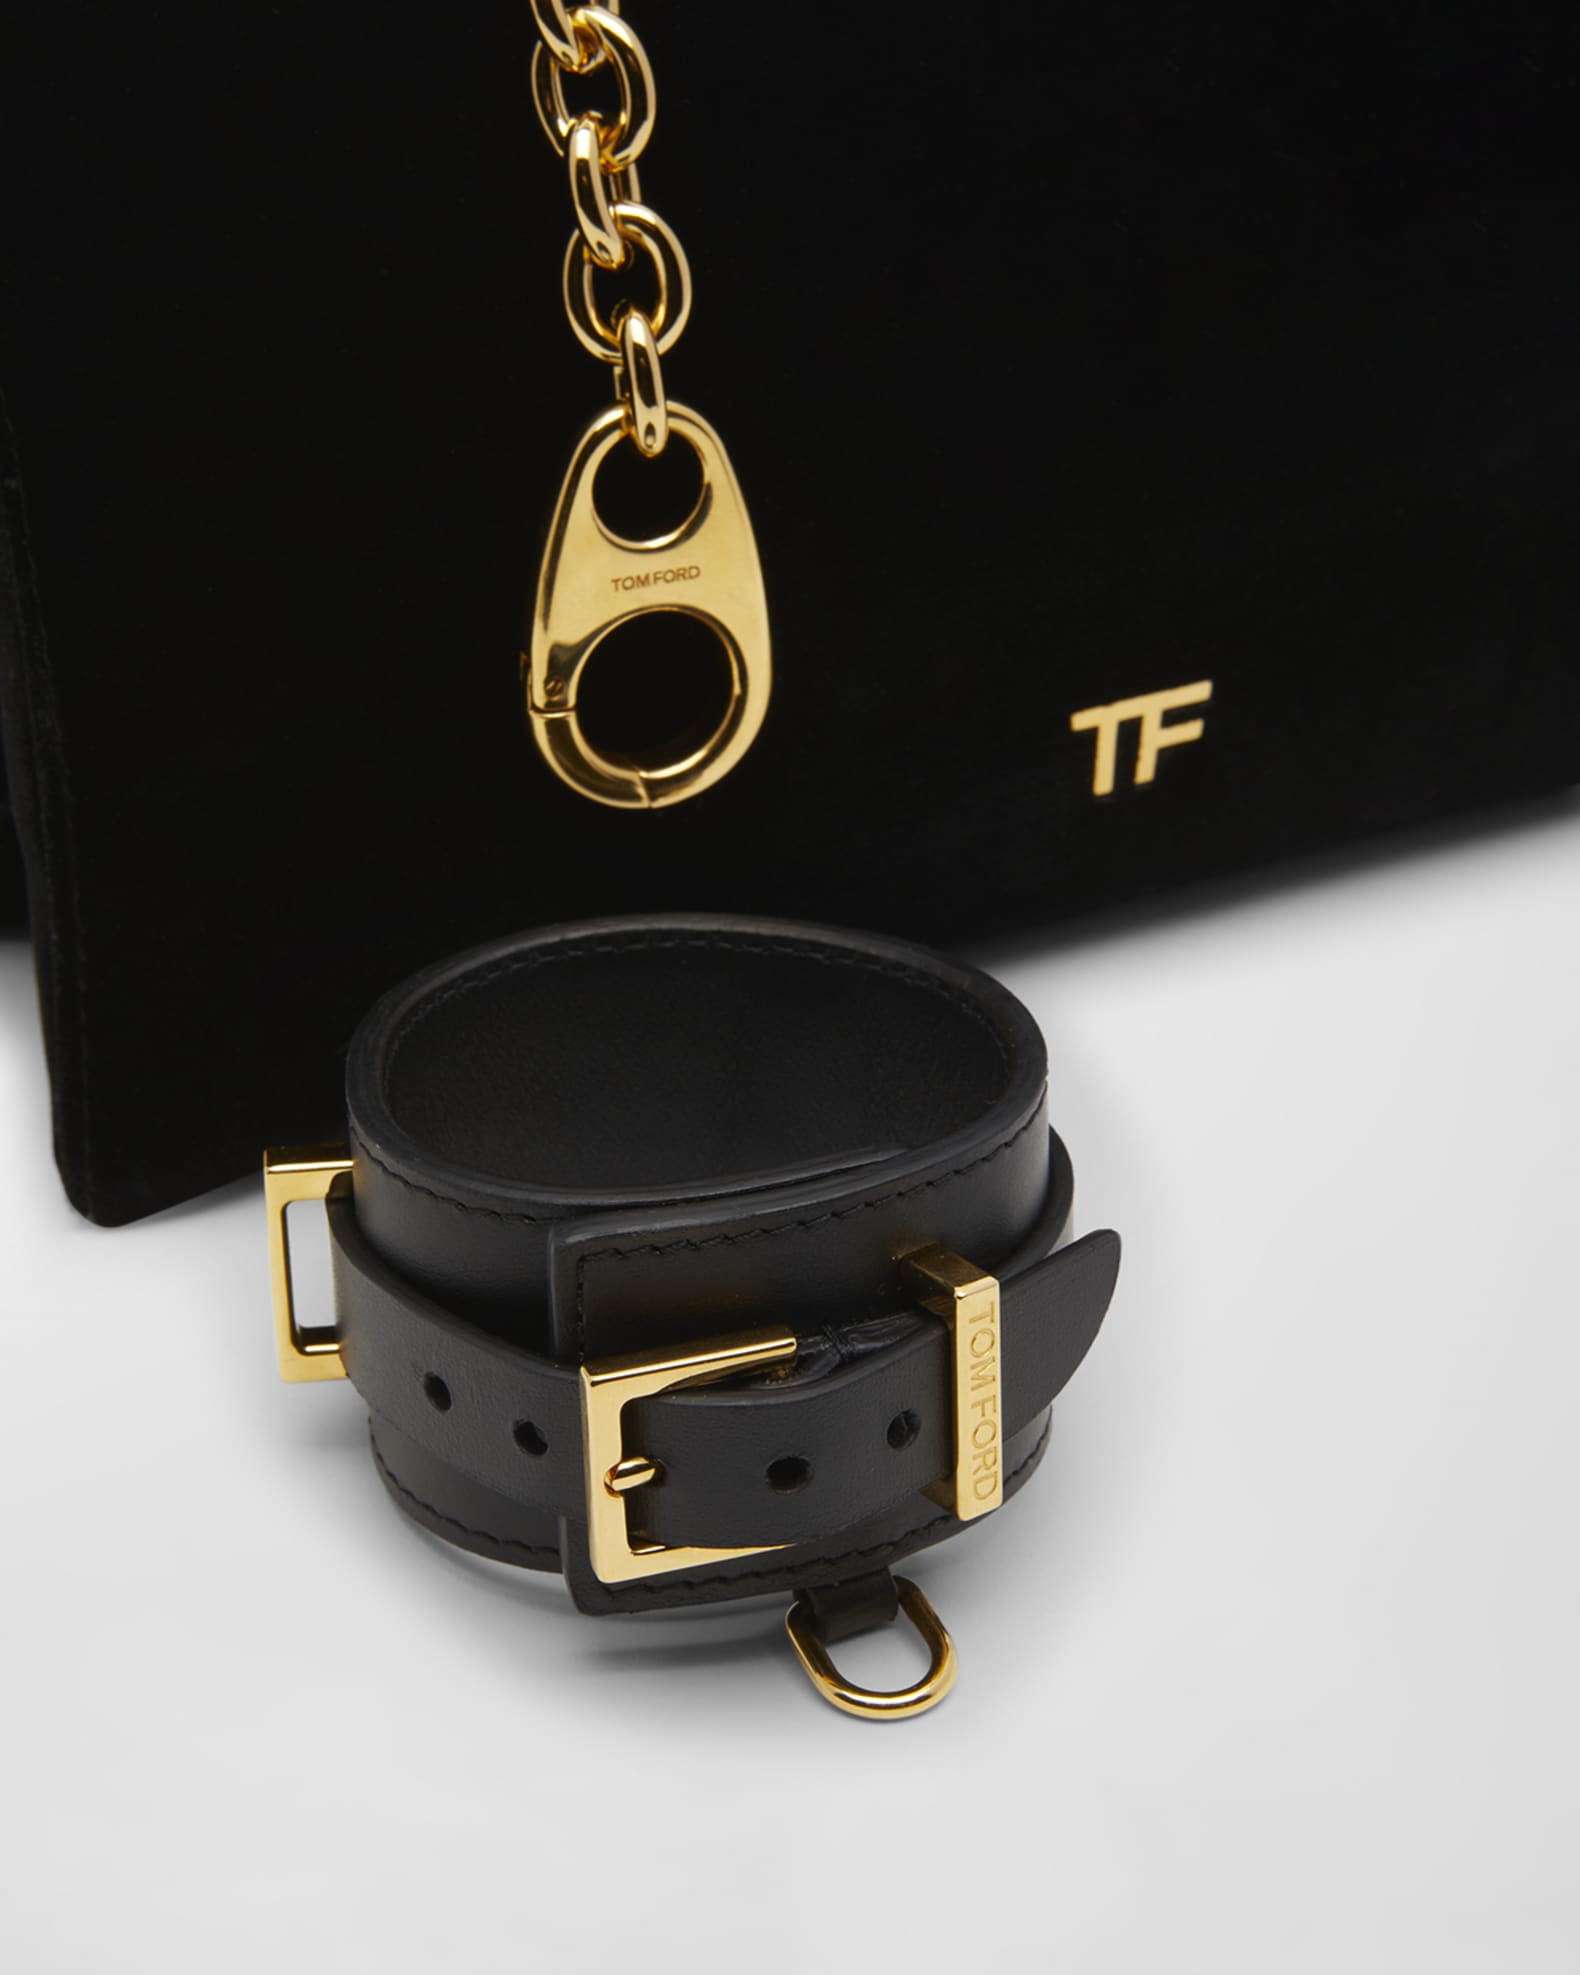 Tom Ford Tf Velvet Chain Bag In Black, ModeSens